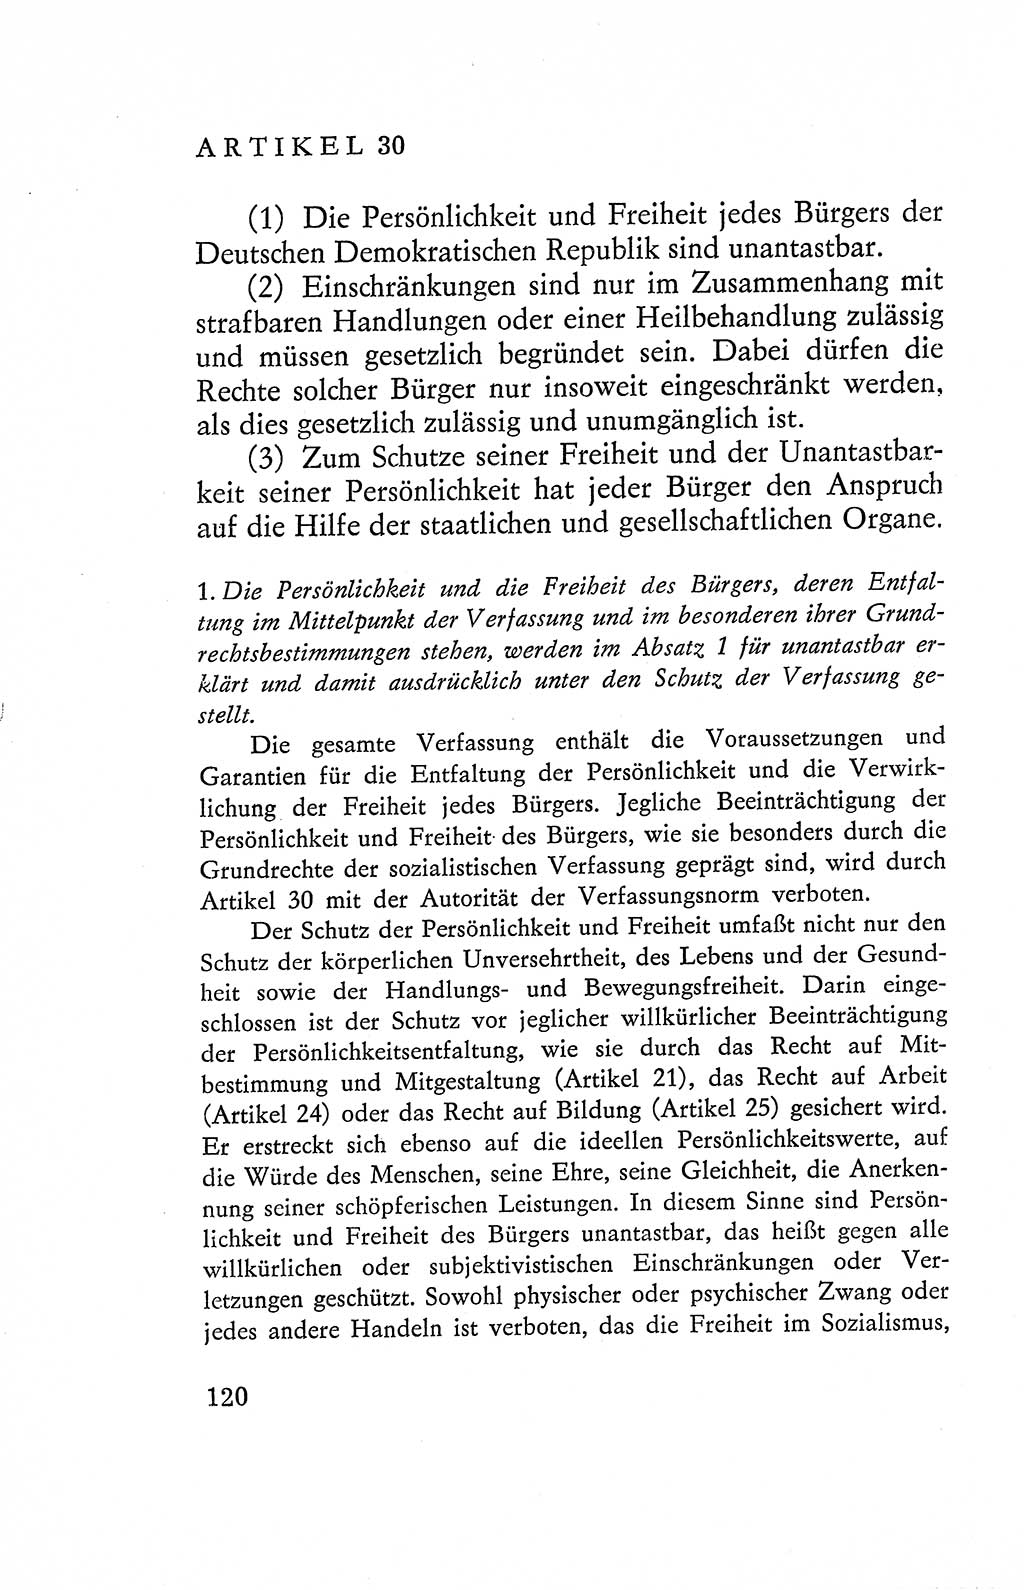 Verfassung der Deutschen Demokratischen Republik (DDR), Dokumente, Kommentar 1969, Band 2, Seite 120 (Verf. DDR Dok. Komm. 1969, Bd. 2, S. 120)